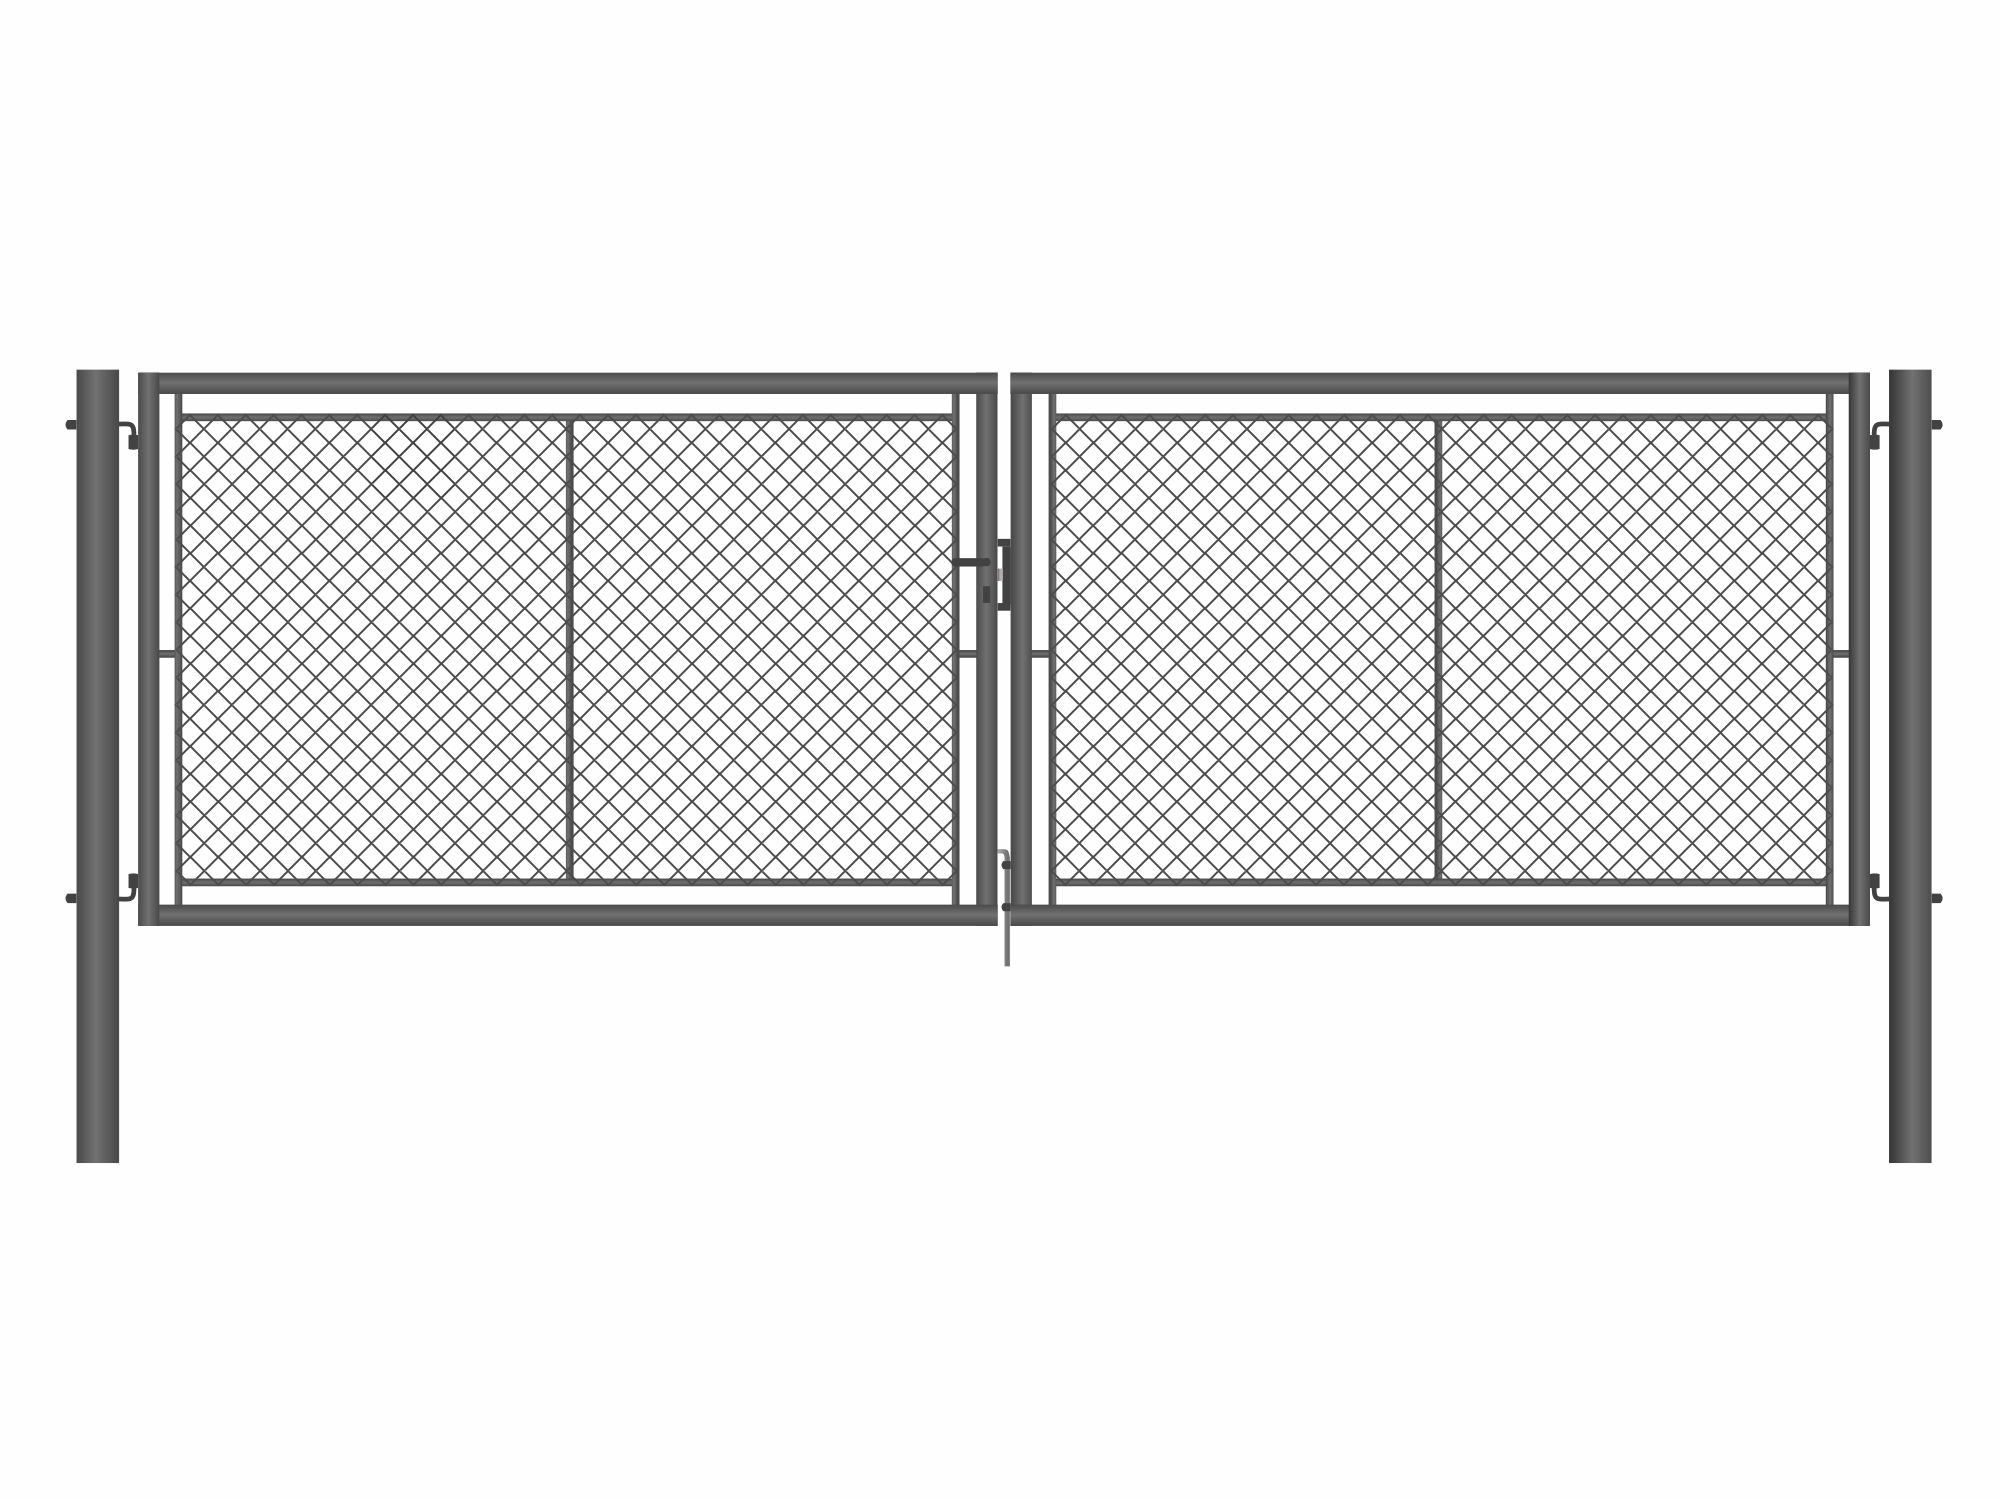 Brána zahradní dvoukřídlá antracit, výška 155 x 400 cm, FAB, s výplní klasického pletiva